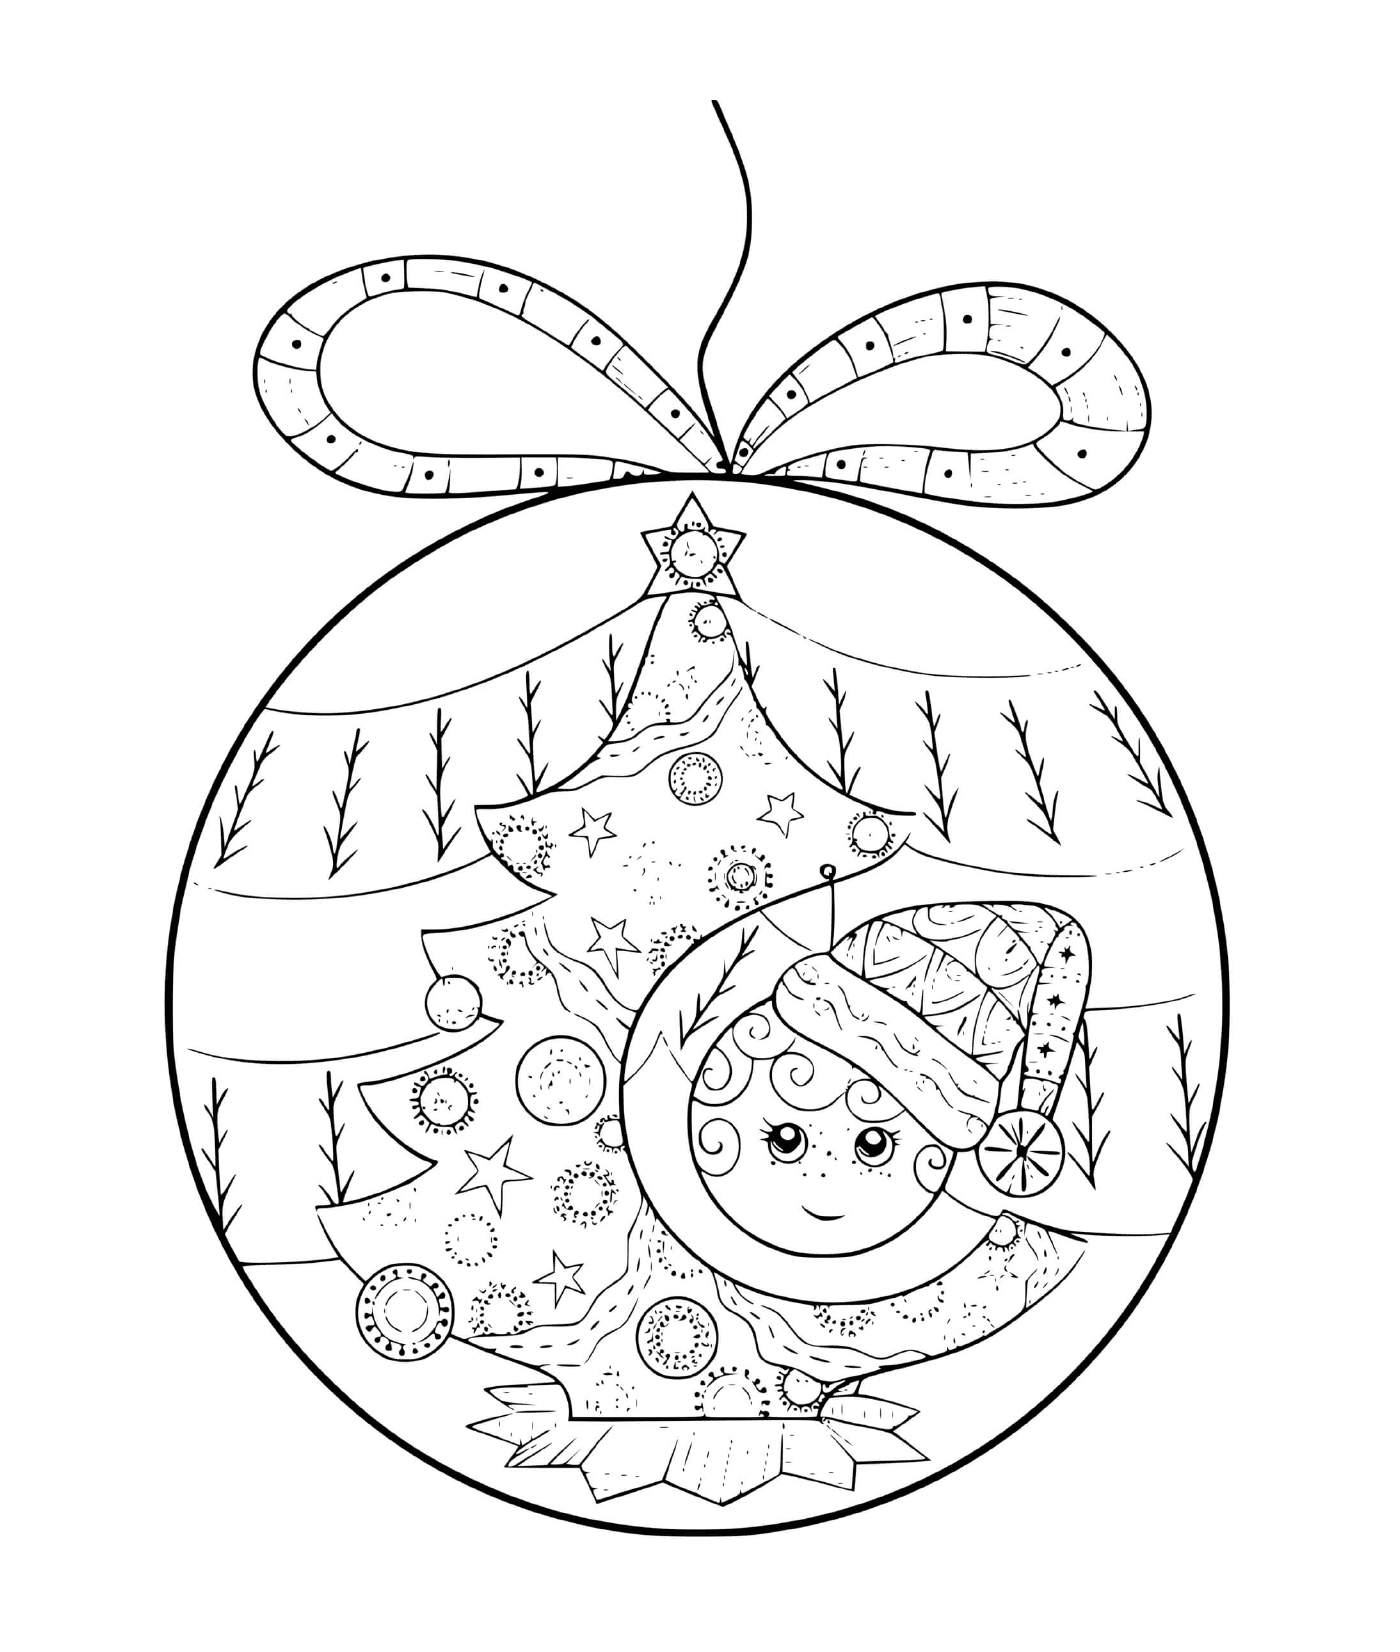  एक क्रिसमस की गेंद बच्चे और पेड़ के साथ 